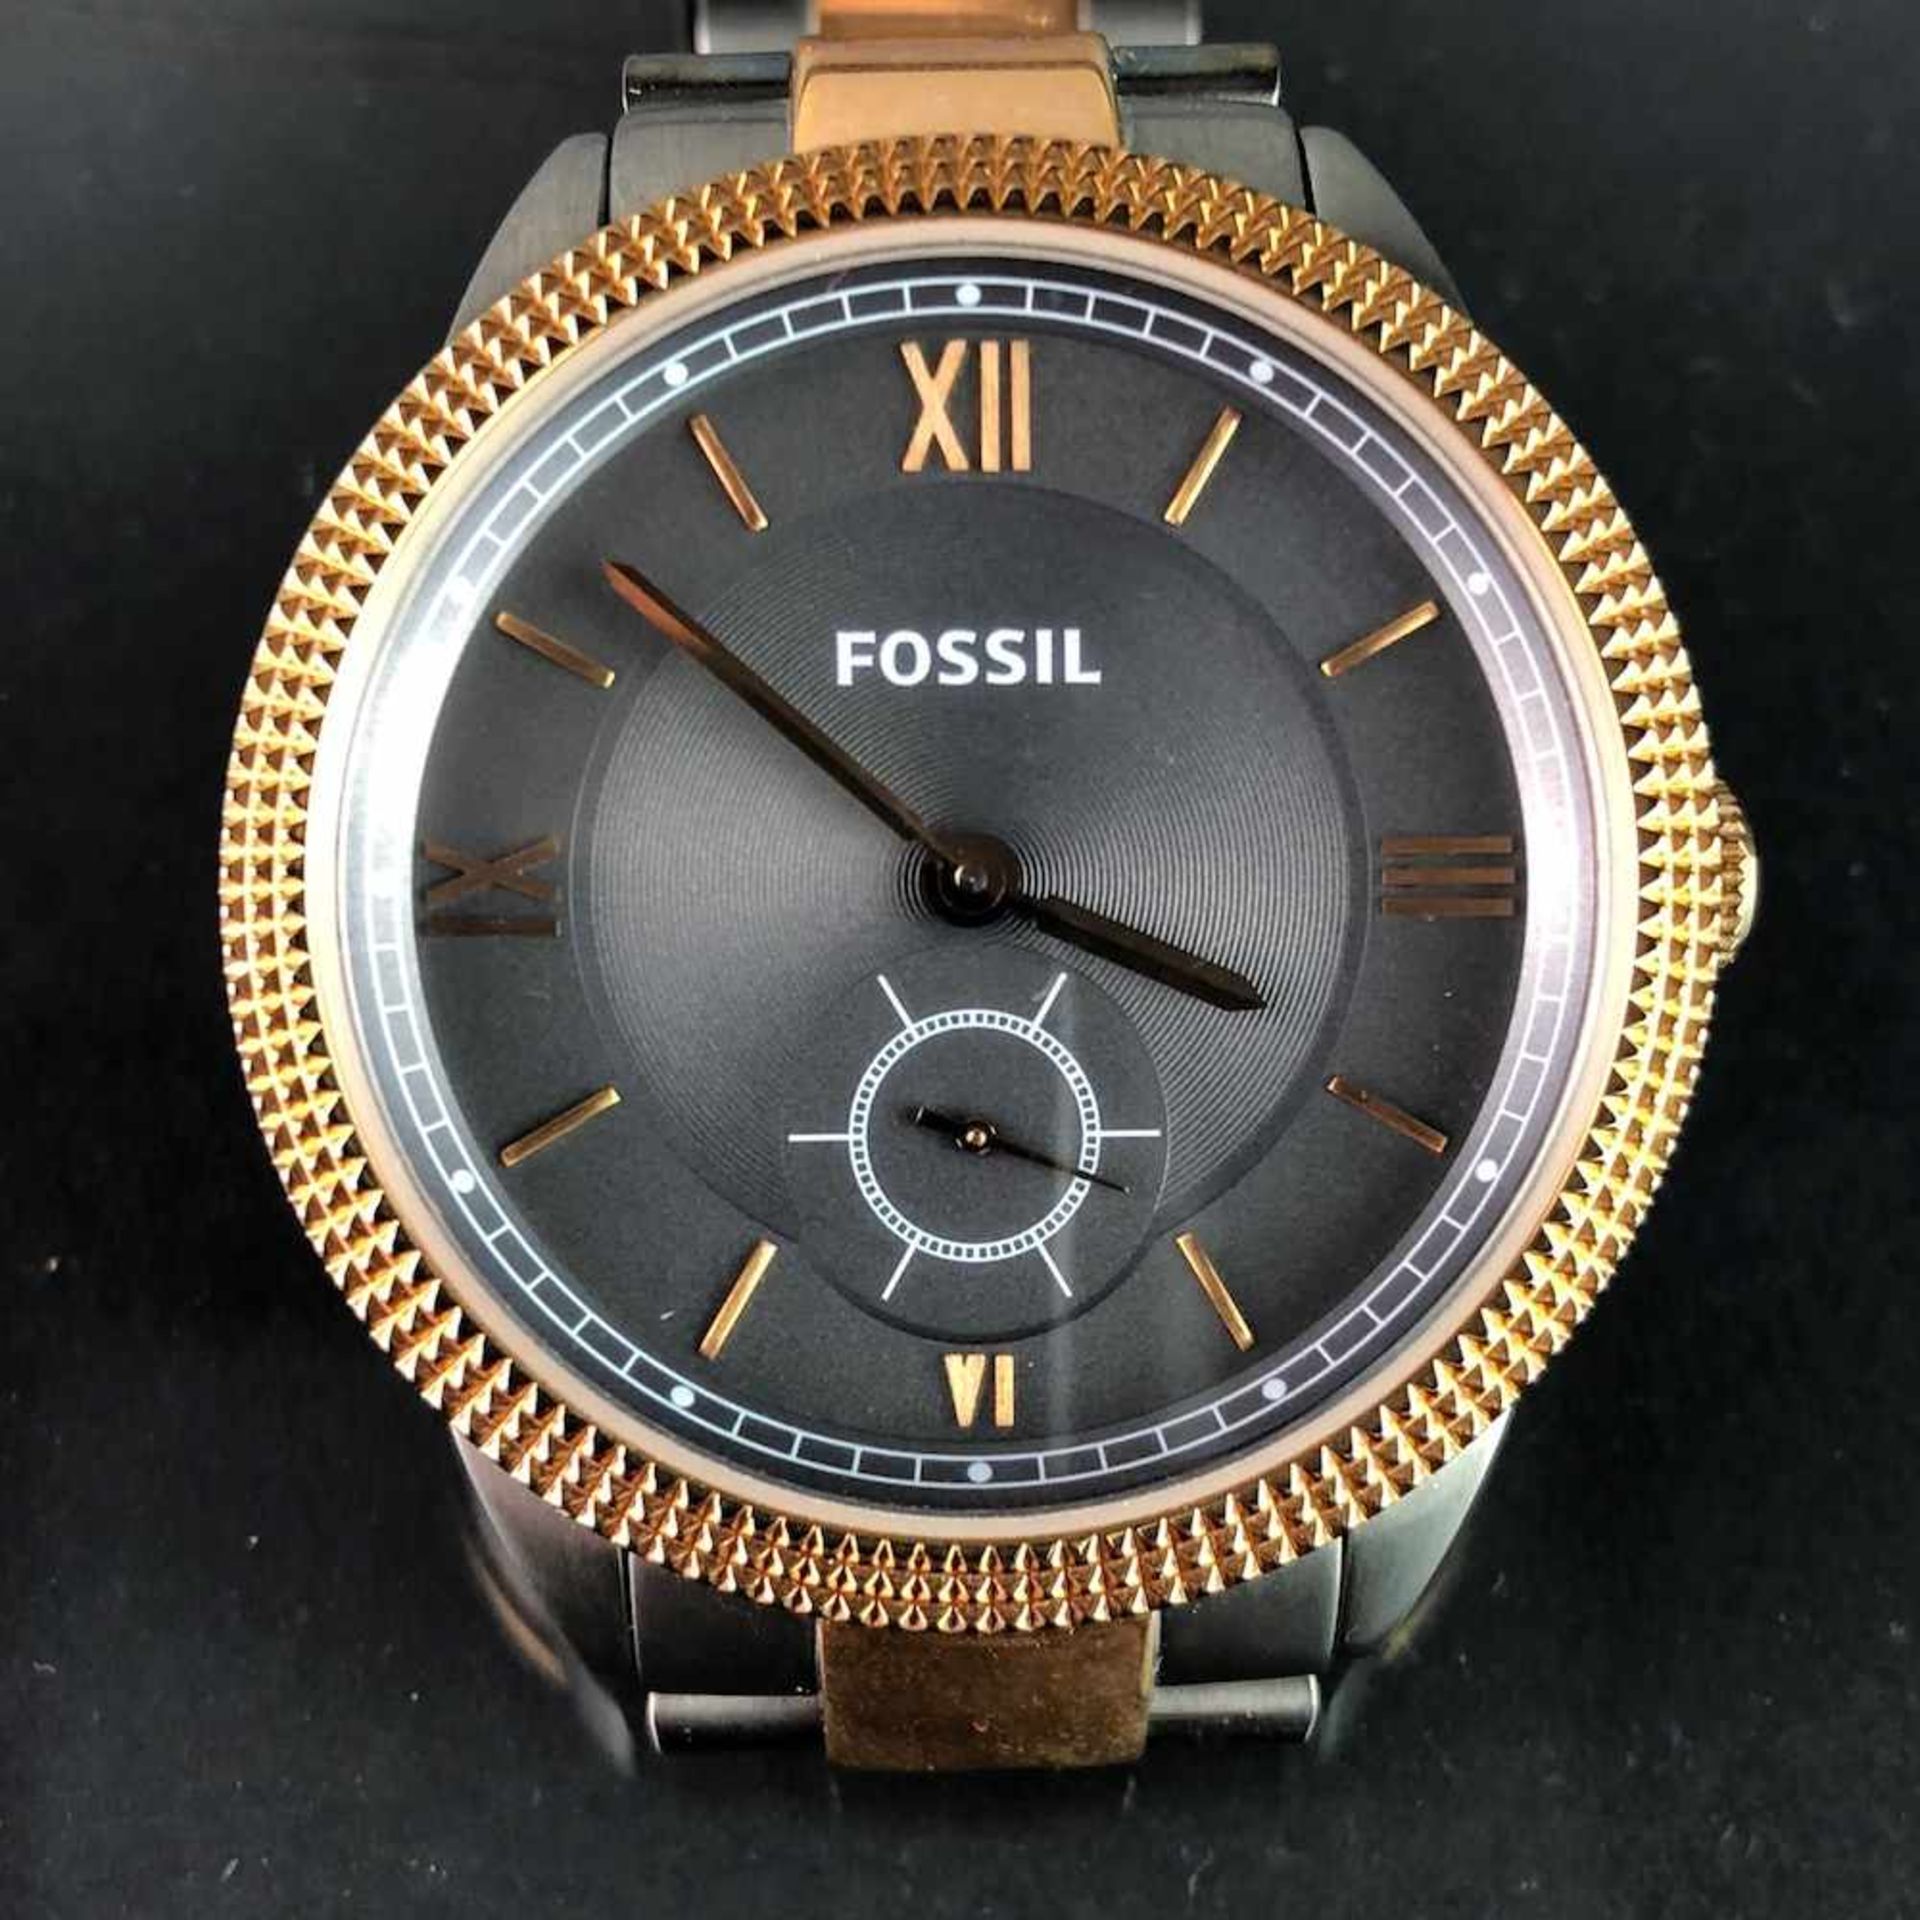 Armbanduhr: "FOSSIL". Edelstahl gebürstet und bicolor. Mineralglas. Ungetragen aus Uhrmachernachlaß.